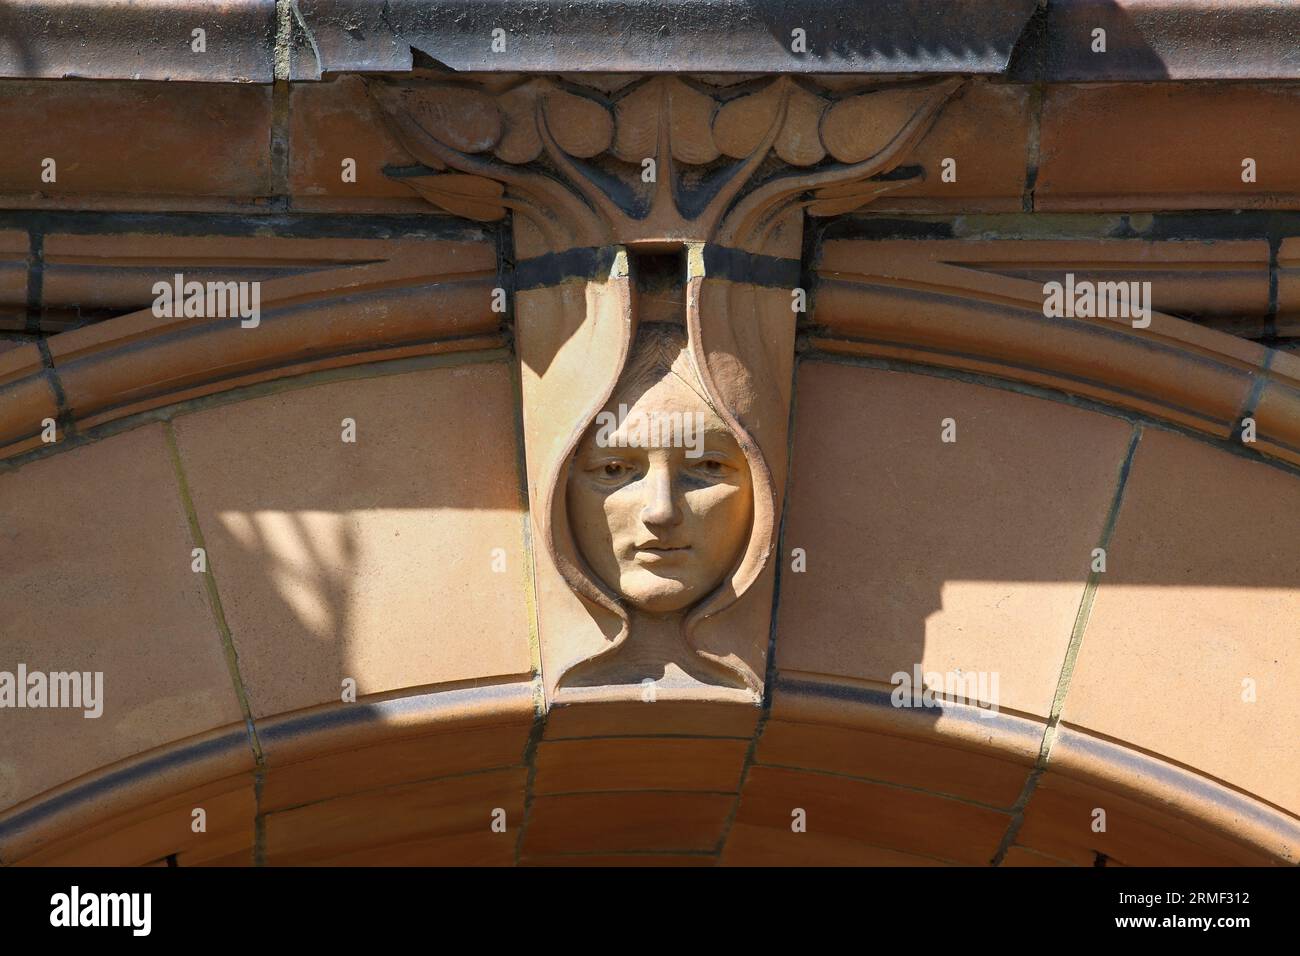 Gros plan de la façade de l'hippodrome de Great Yarmouth montrant une clef de voûte en forme de tête art nouveau encadrée par des feuilles. Banque D'Images